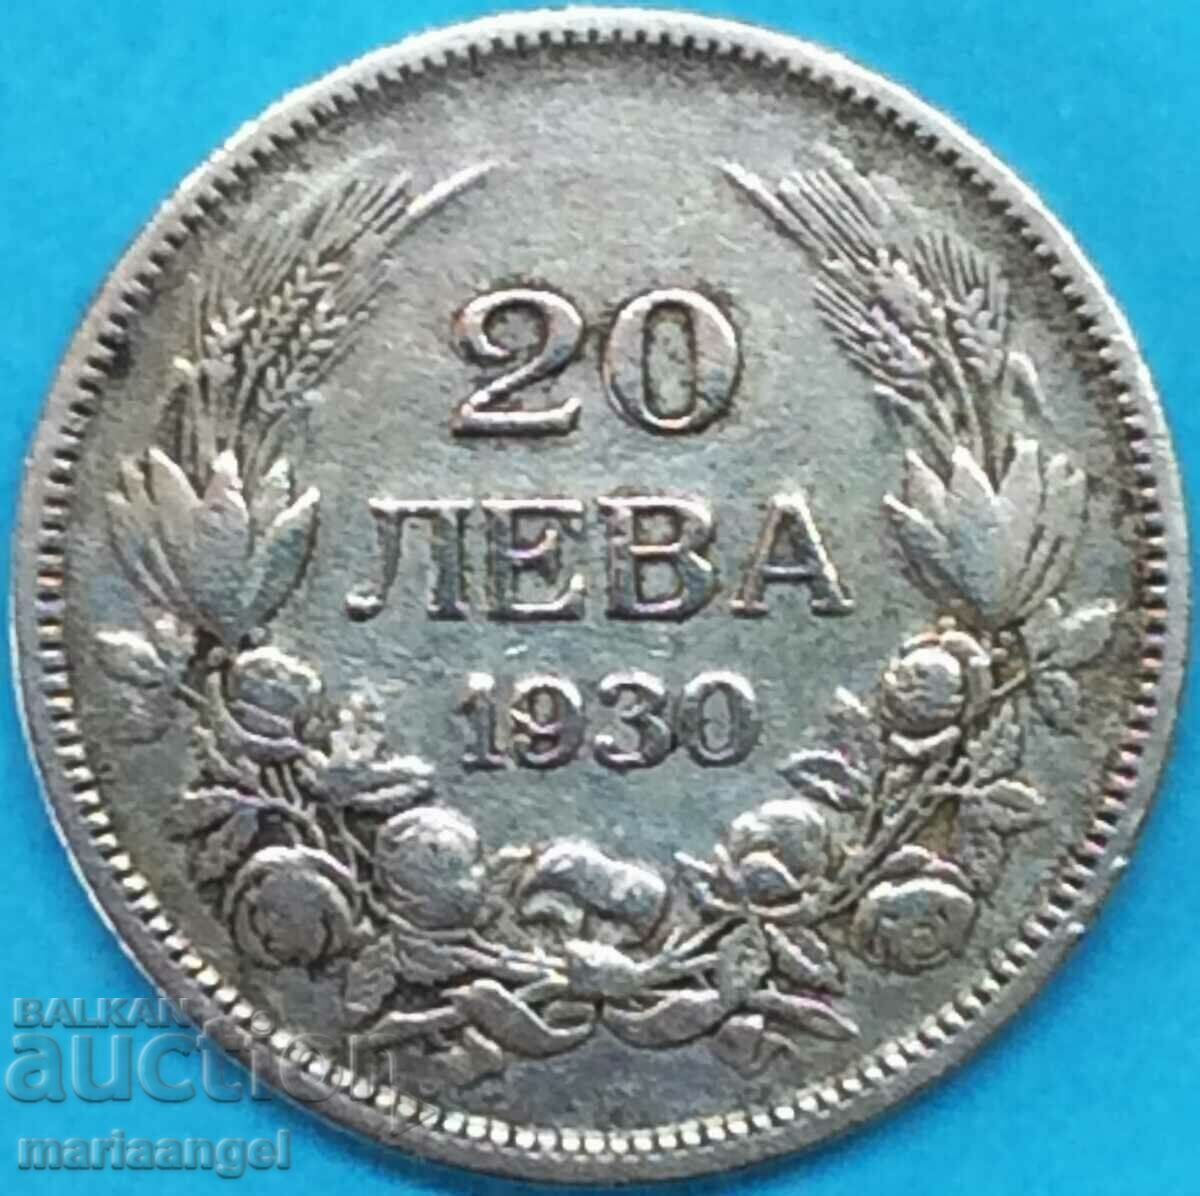 Bulgaria 20 leva 1930 argint